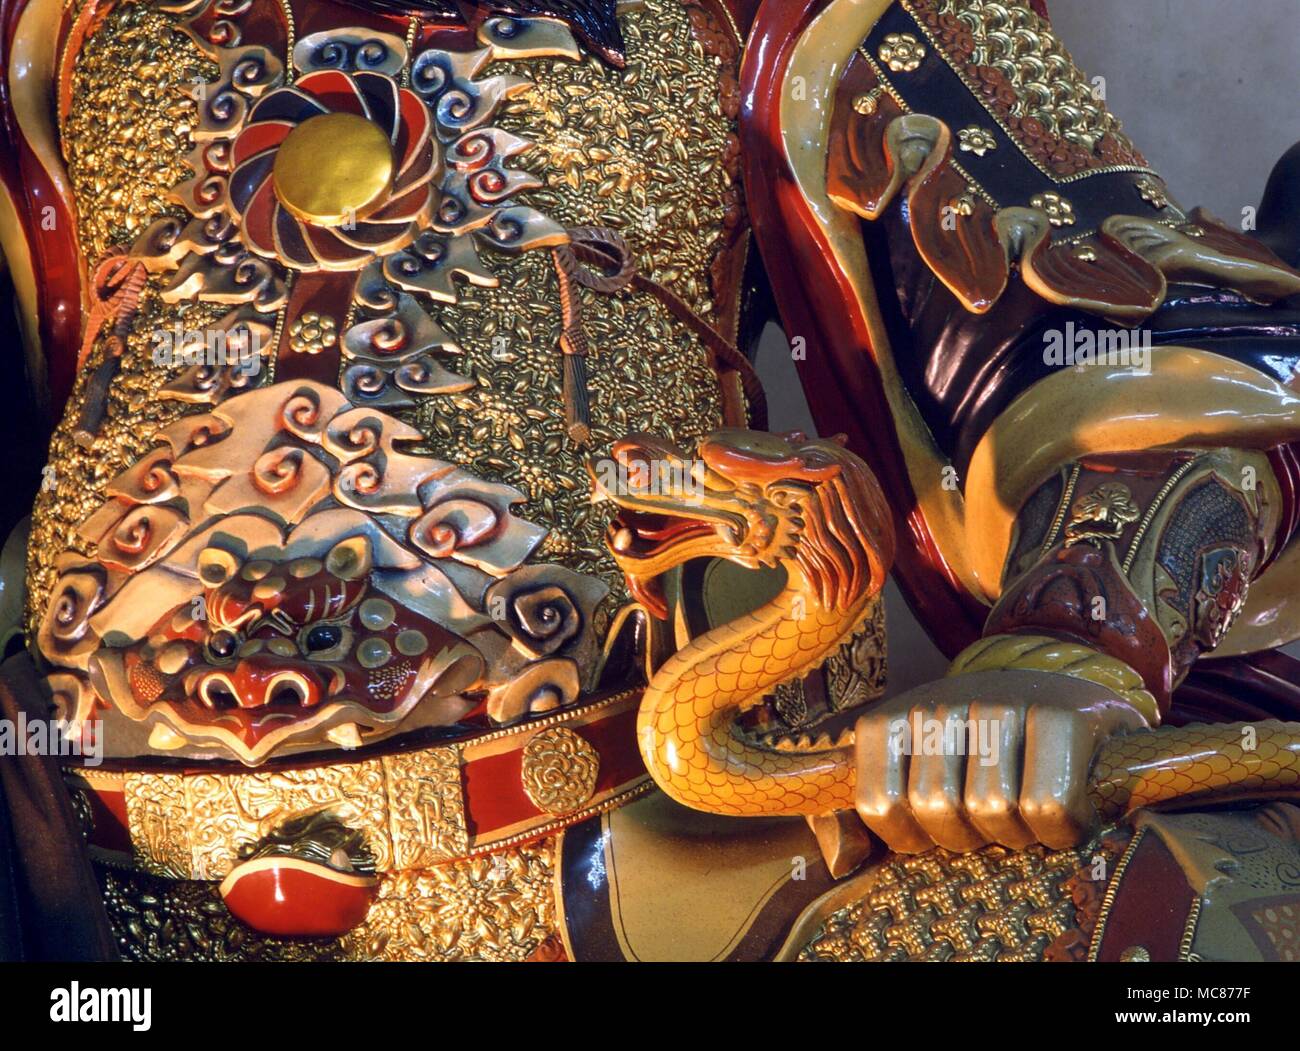 Le serpent, qui s'est tenue dans la main du roi céleste chinois, 'le bien célèbre" dont le serpent est un attribut important. Monastère Po Lin, Lantau Banque D'Images